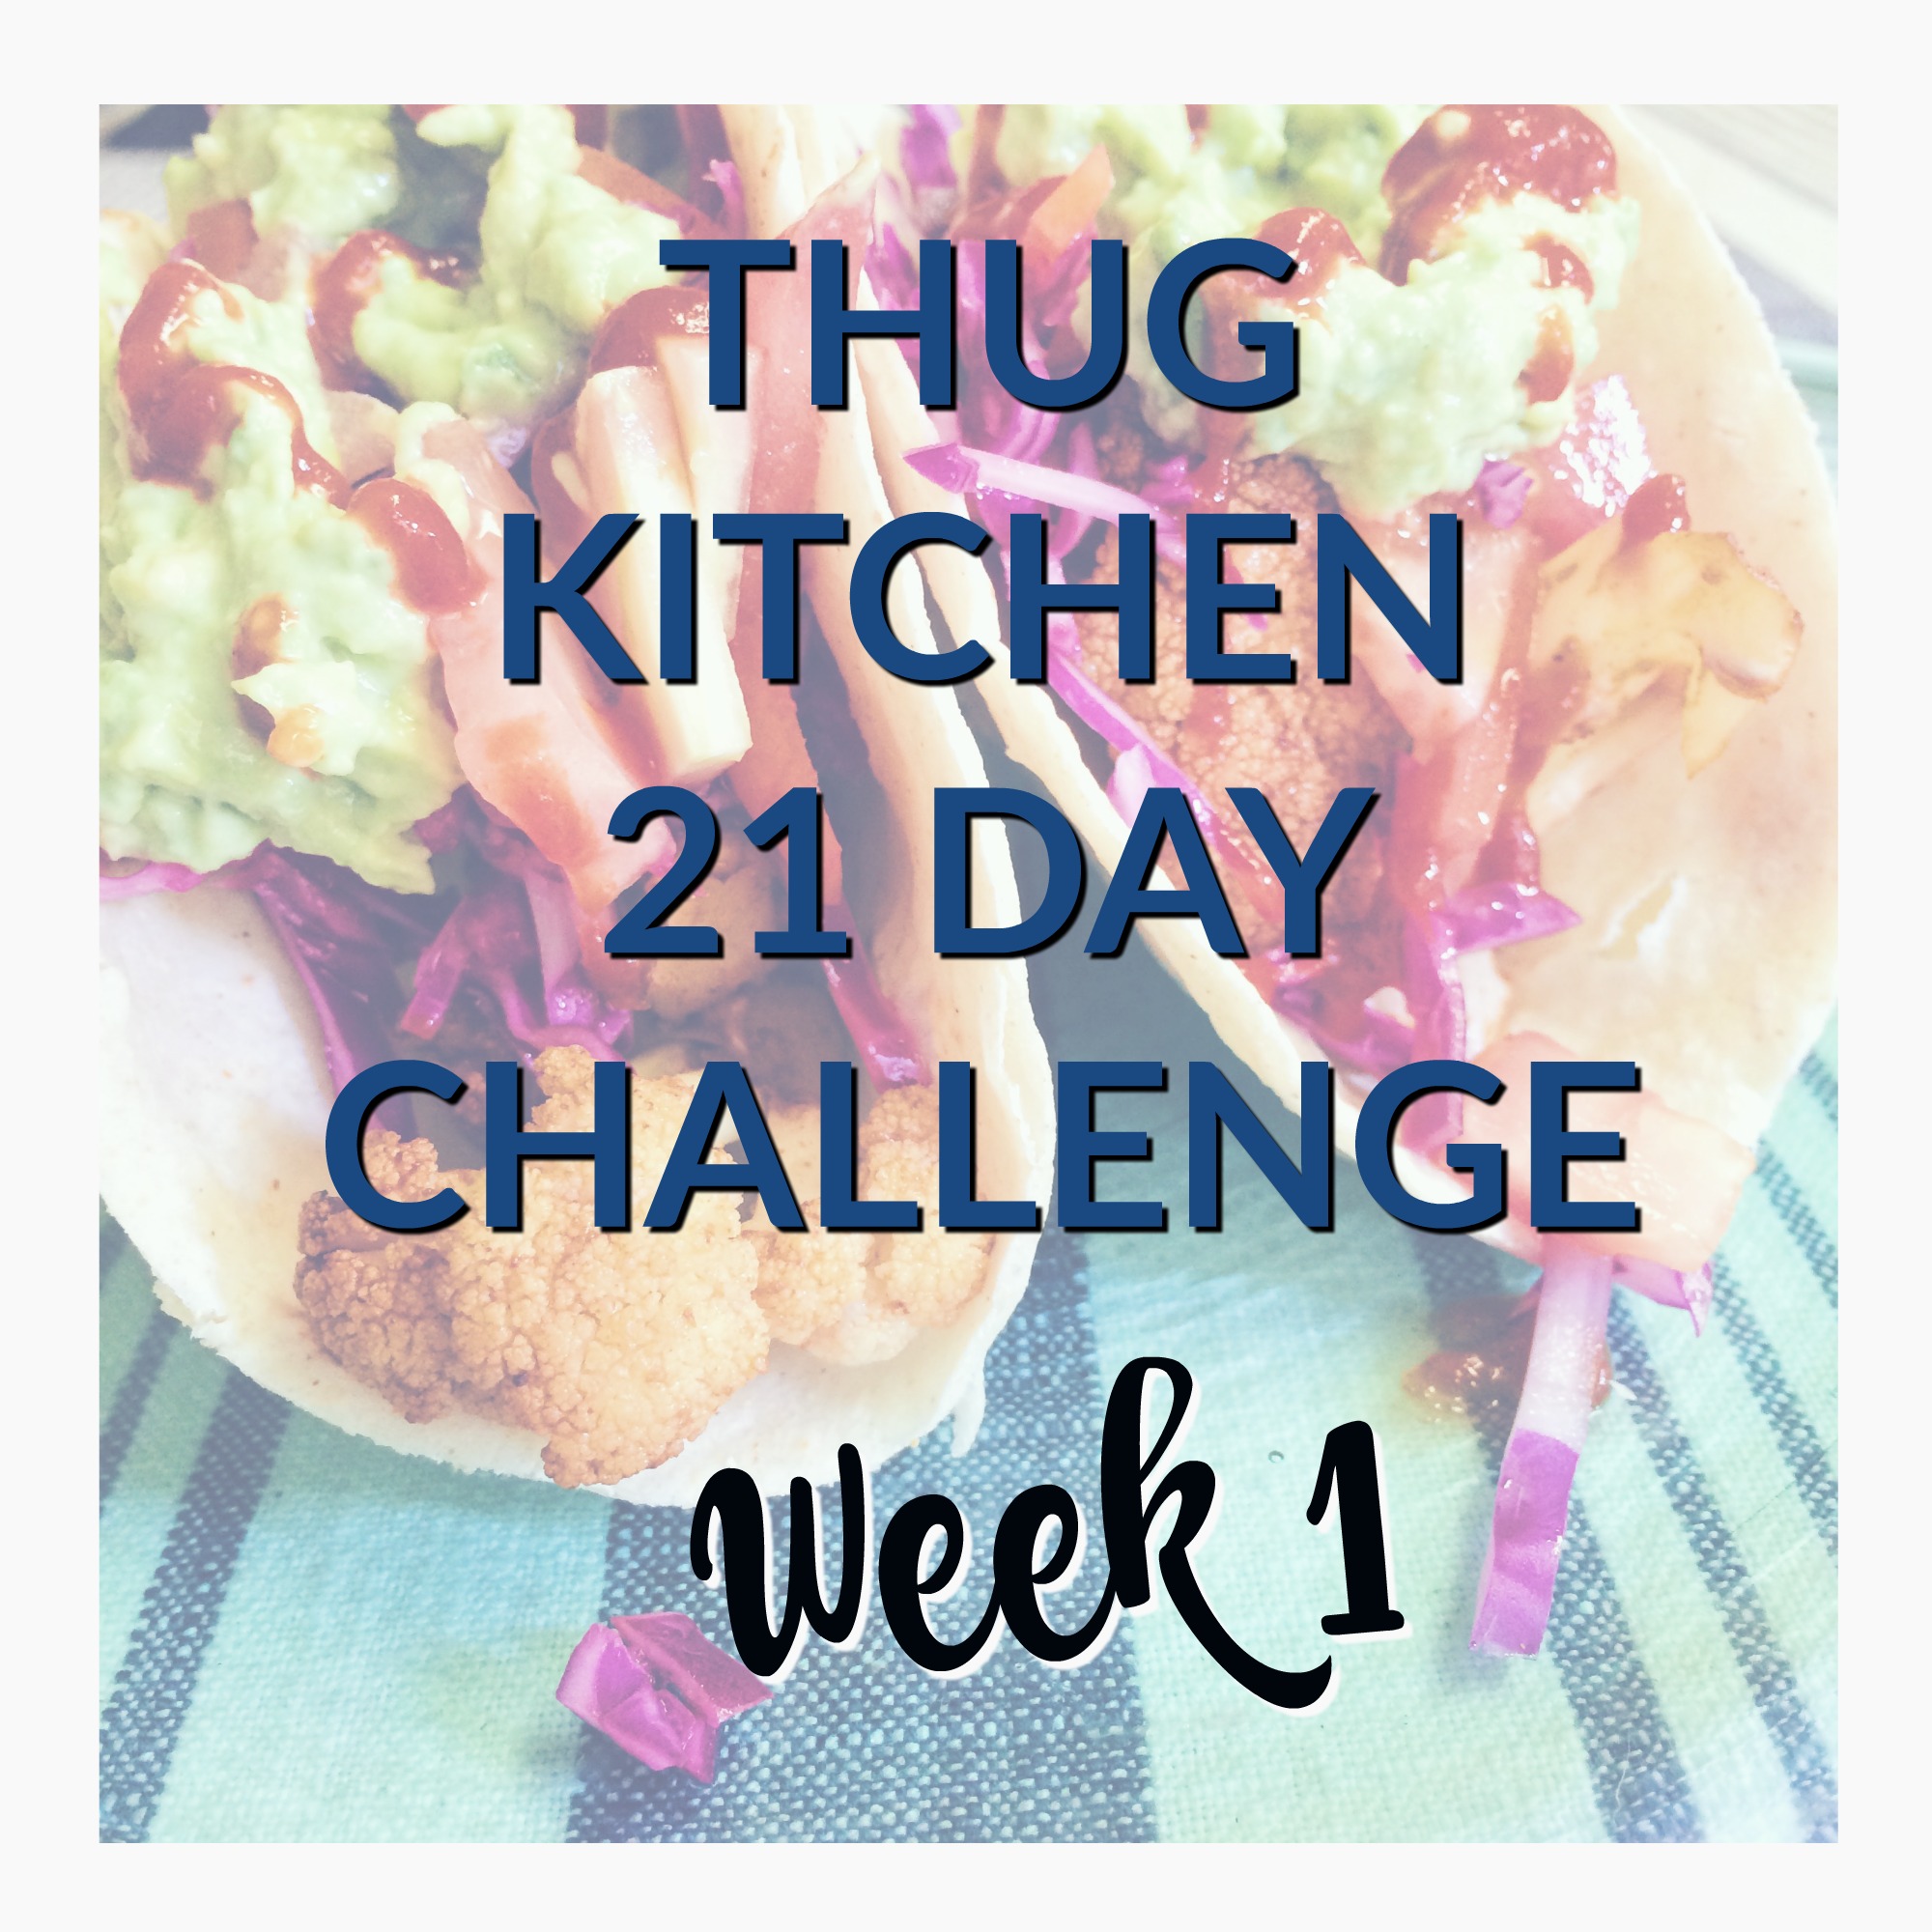 Thug Kitchen 21 Day Challenge – Week 1 Recipes